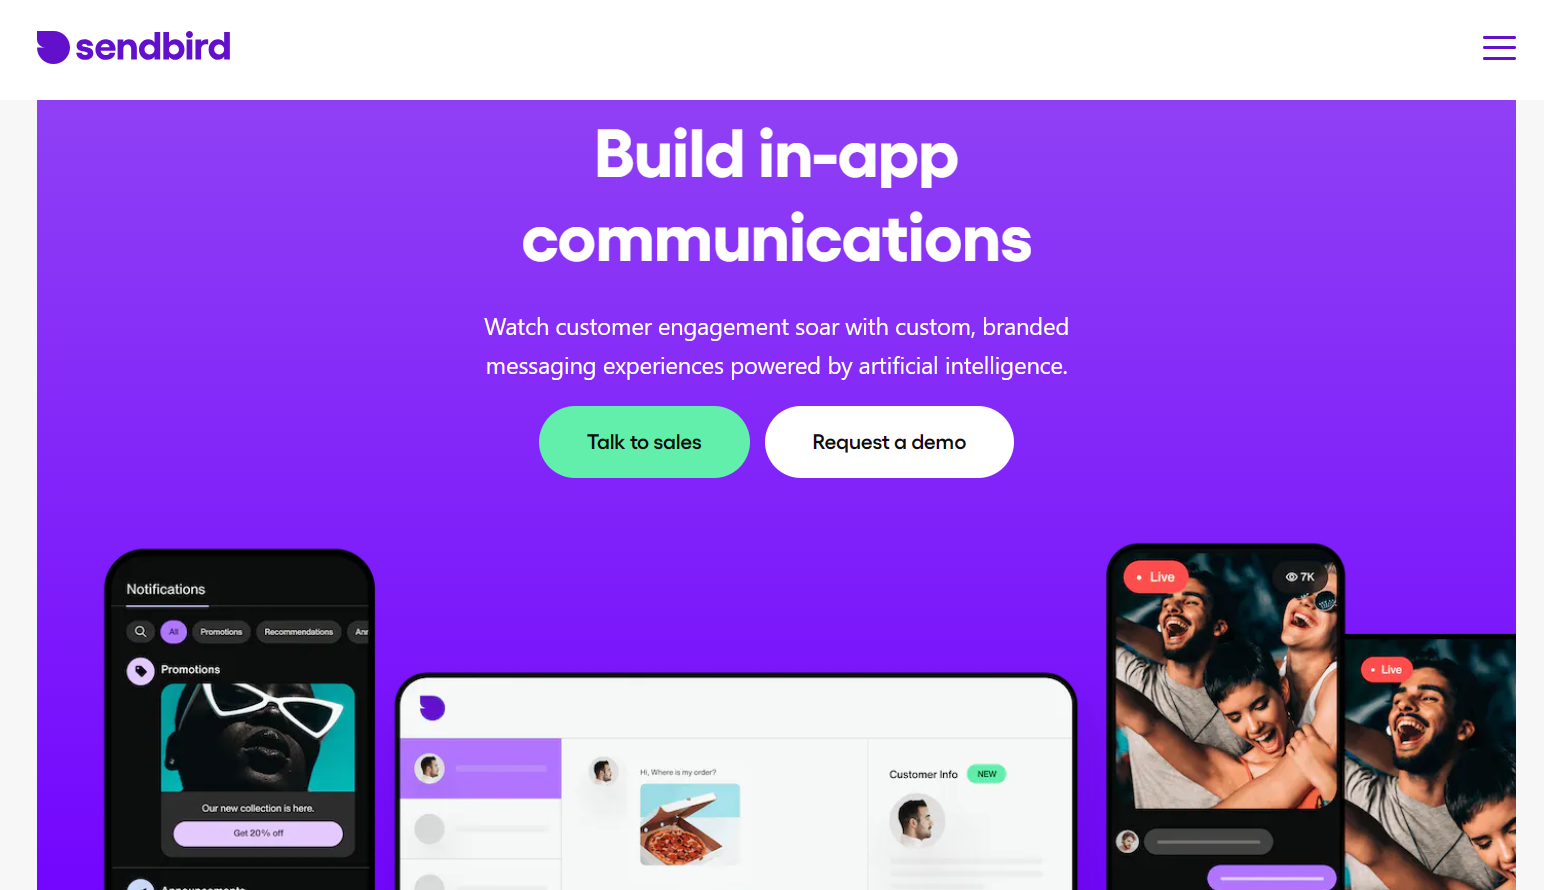 sendbird.com – build in-app communications